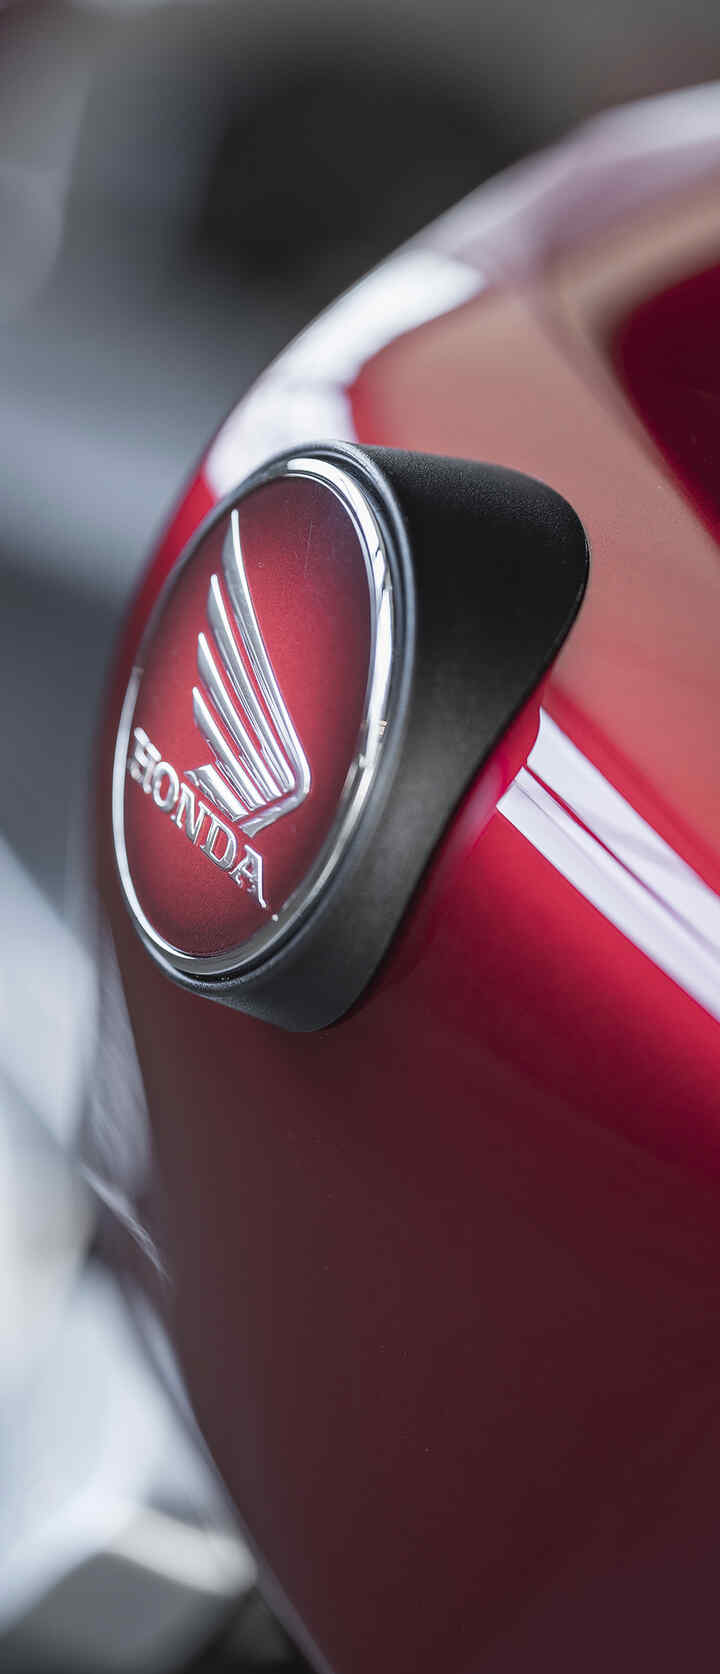 Zbiornik paliwa w motocyklu Honda ze skrzydlatym logo